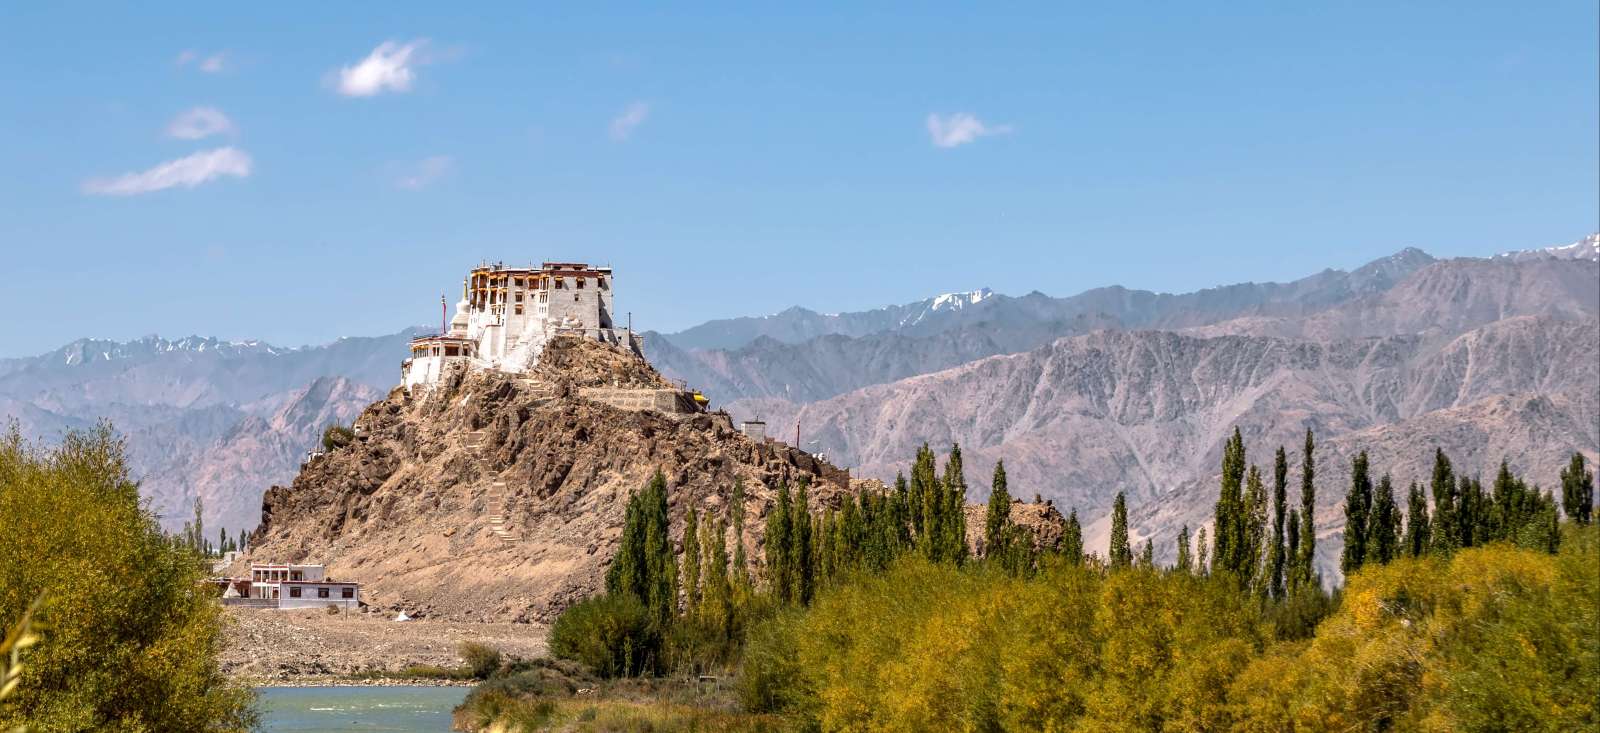 Voyage roadtrip - Inde : Le Ladakh en douceur